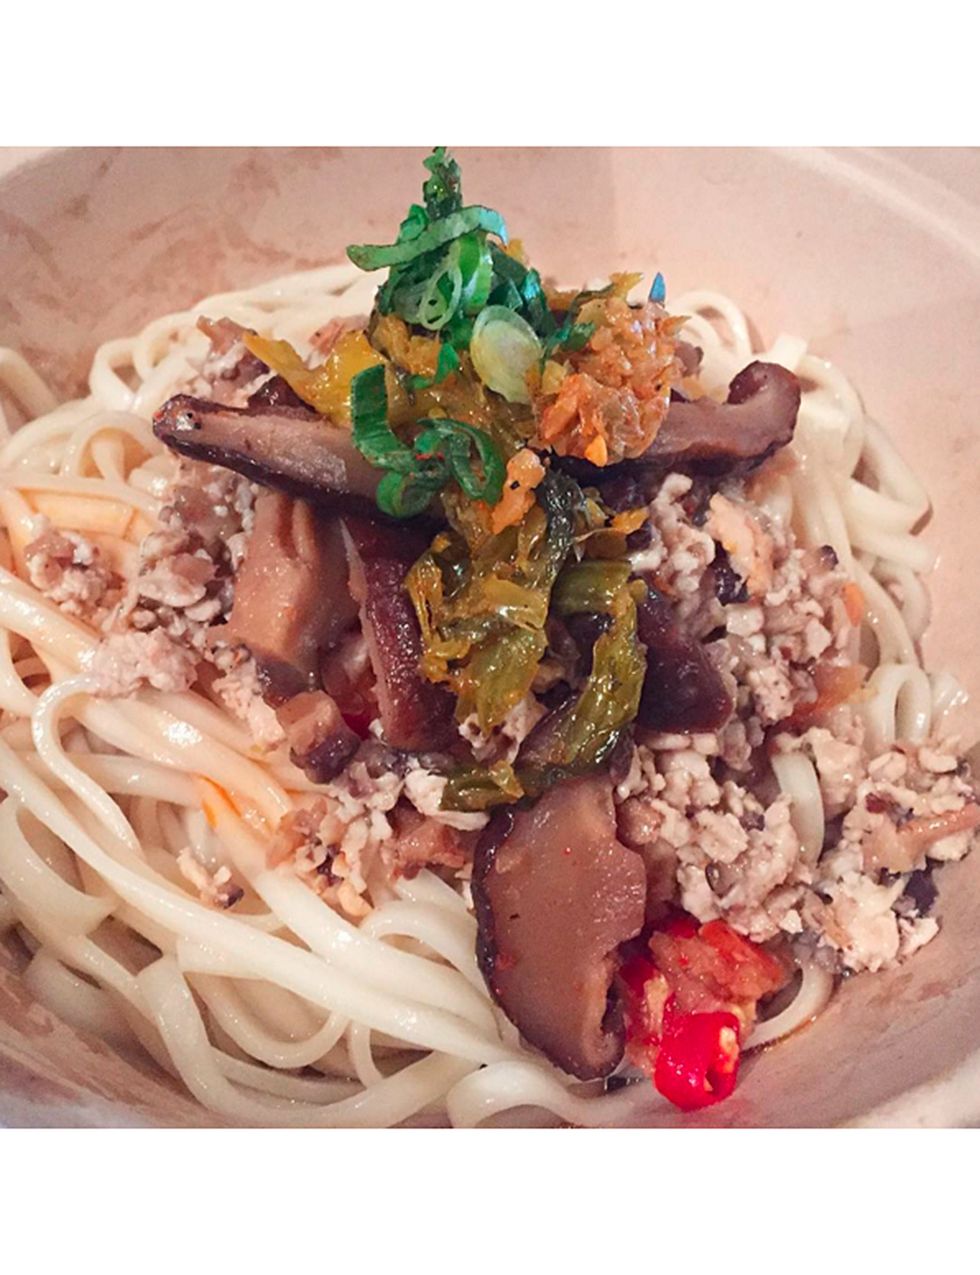 <p>'Chef' del apetecible <a href="http://www.baohausnyc.com/" target="_blank">Baohaus</a> e inspiración para el programa de la ABC 'Fresh off the Boat', Huang une comida apetecible, cocina asiática e ingeniosos memes en su Instagram.</p>